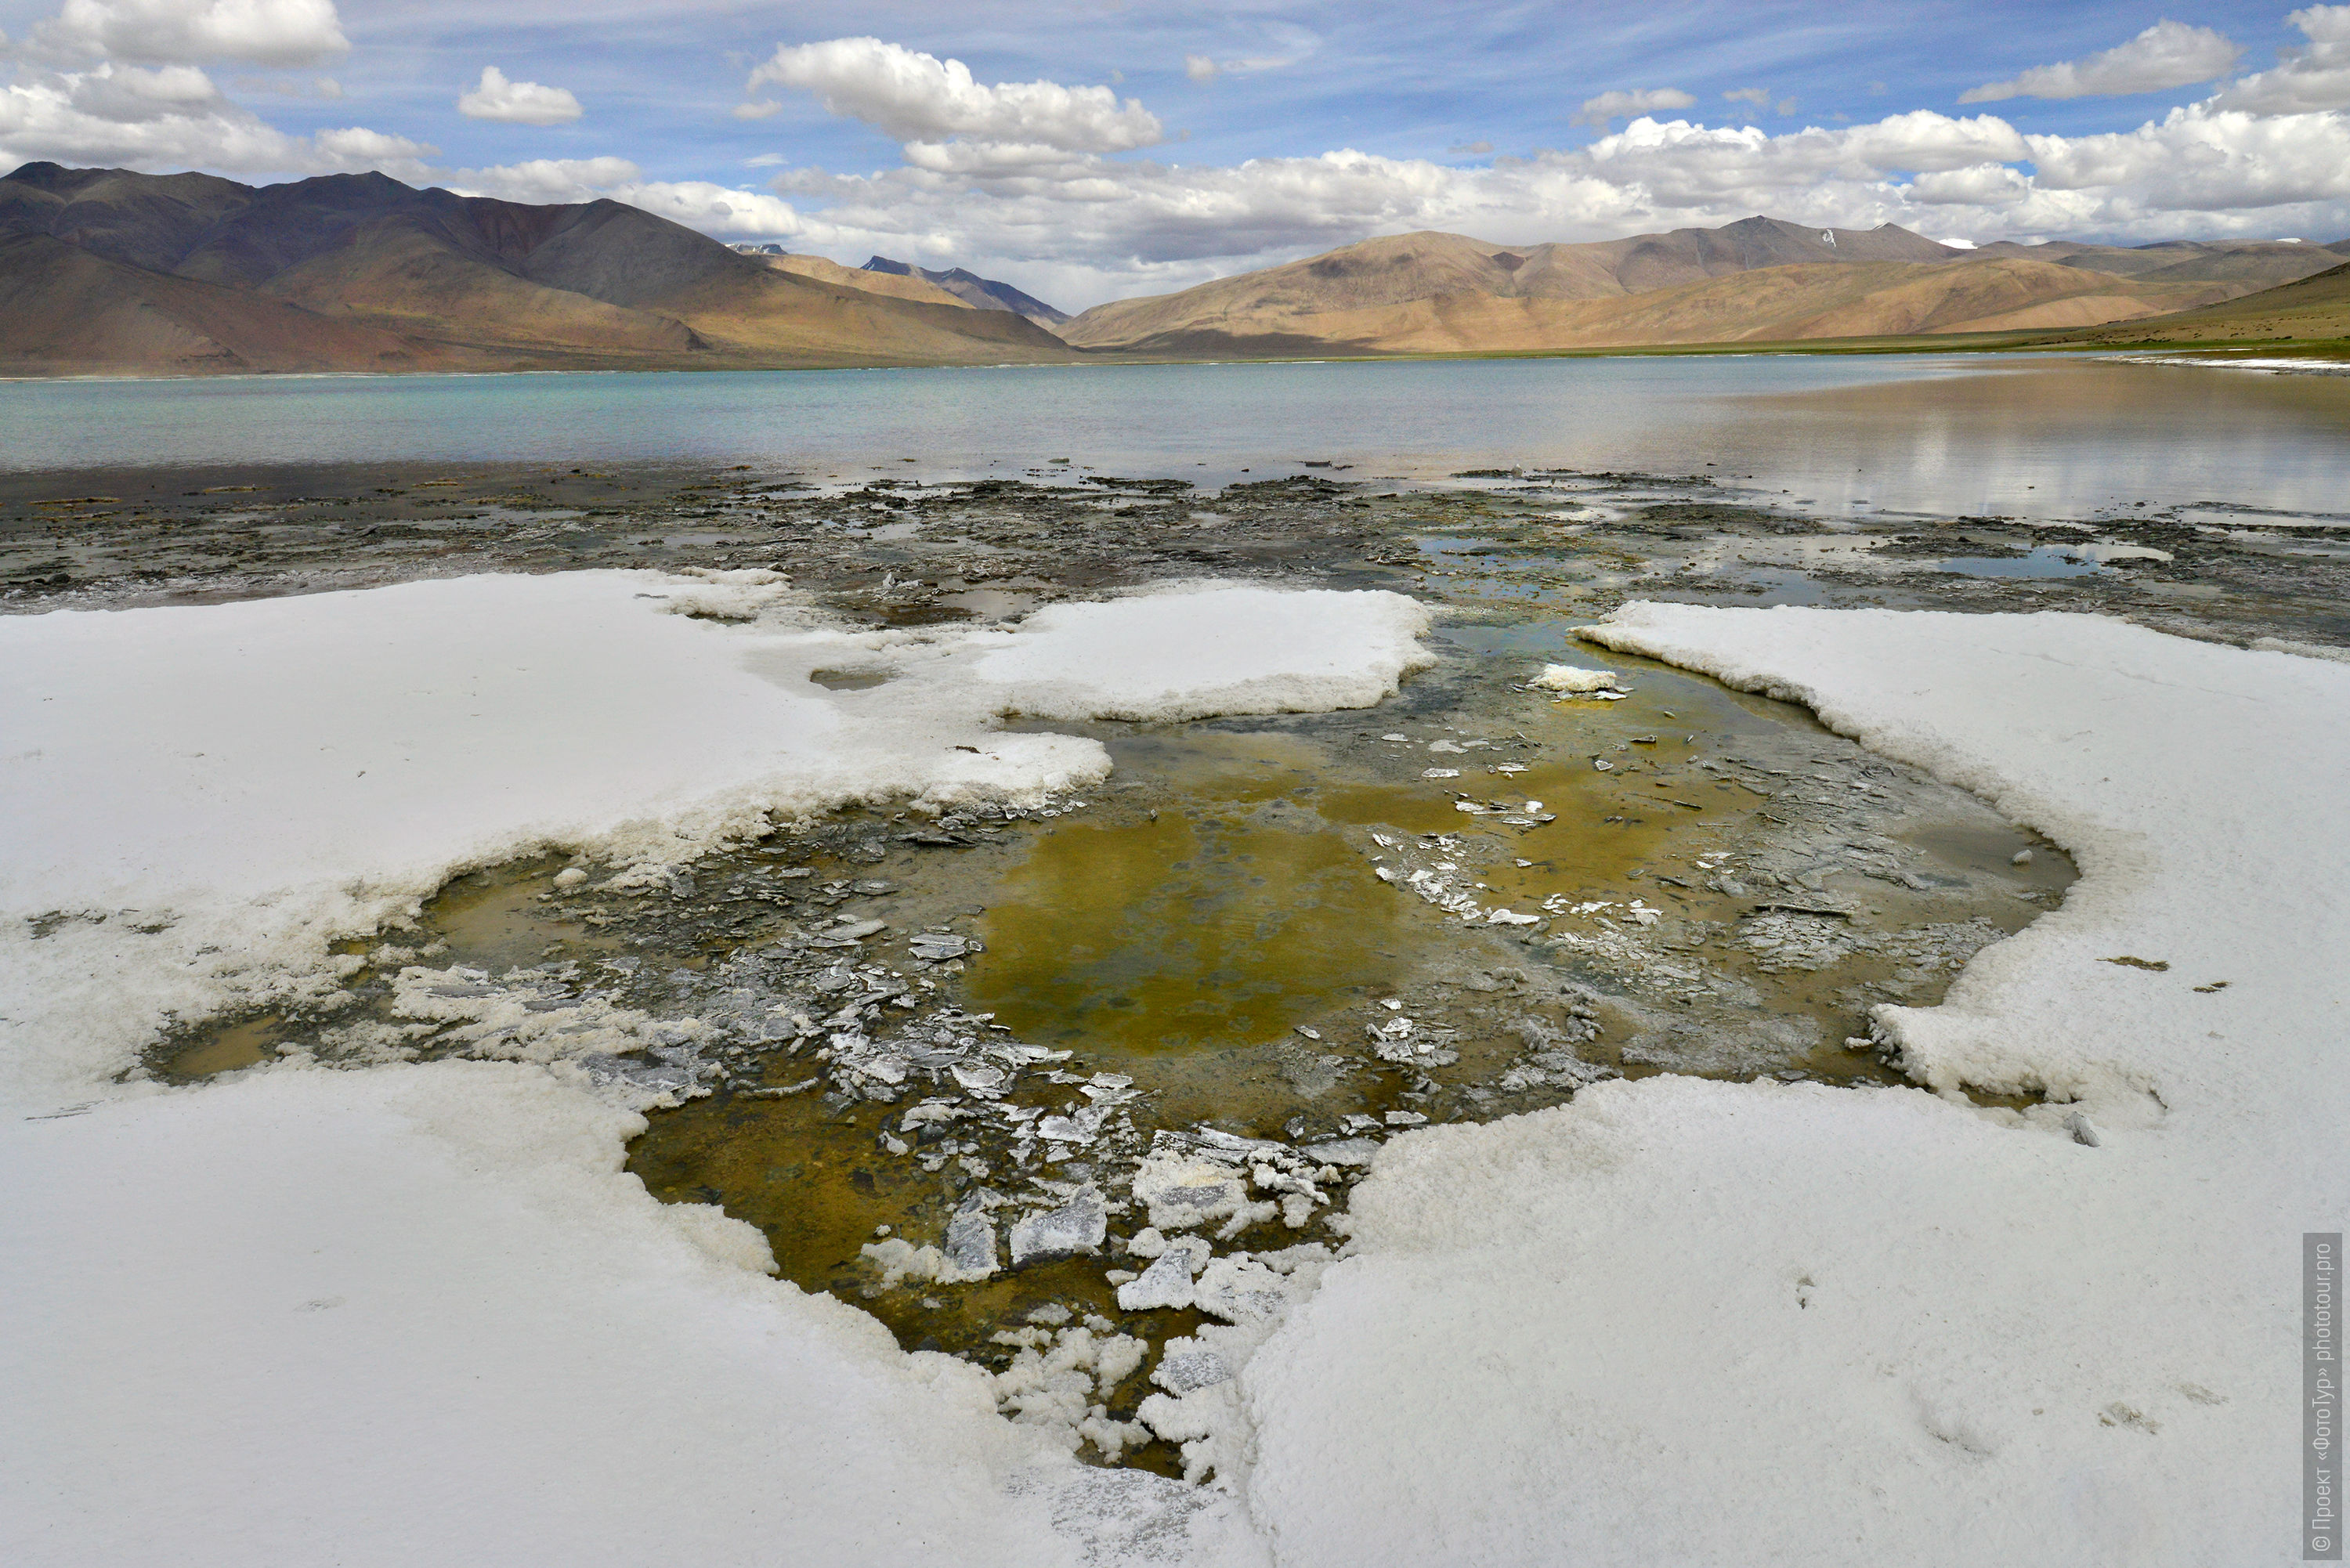 Salt crust on the shore of Lake Tso Kar, Rupshu Valley. Tour Tibet Lakeside Advertising: Alpine lakes, geyser valley, Lamayuru, Colored Mountains, 01 - 10.09. 2022 year.